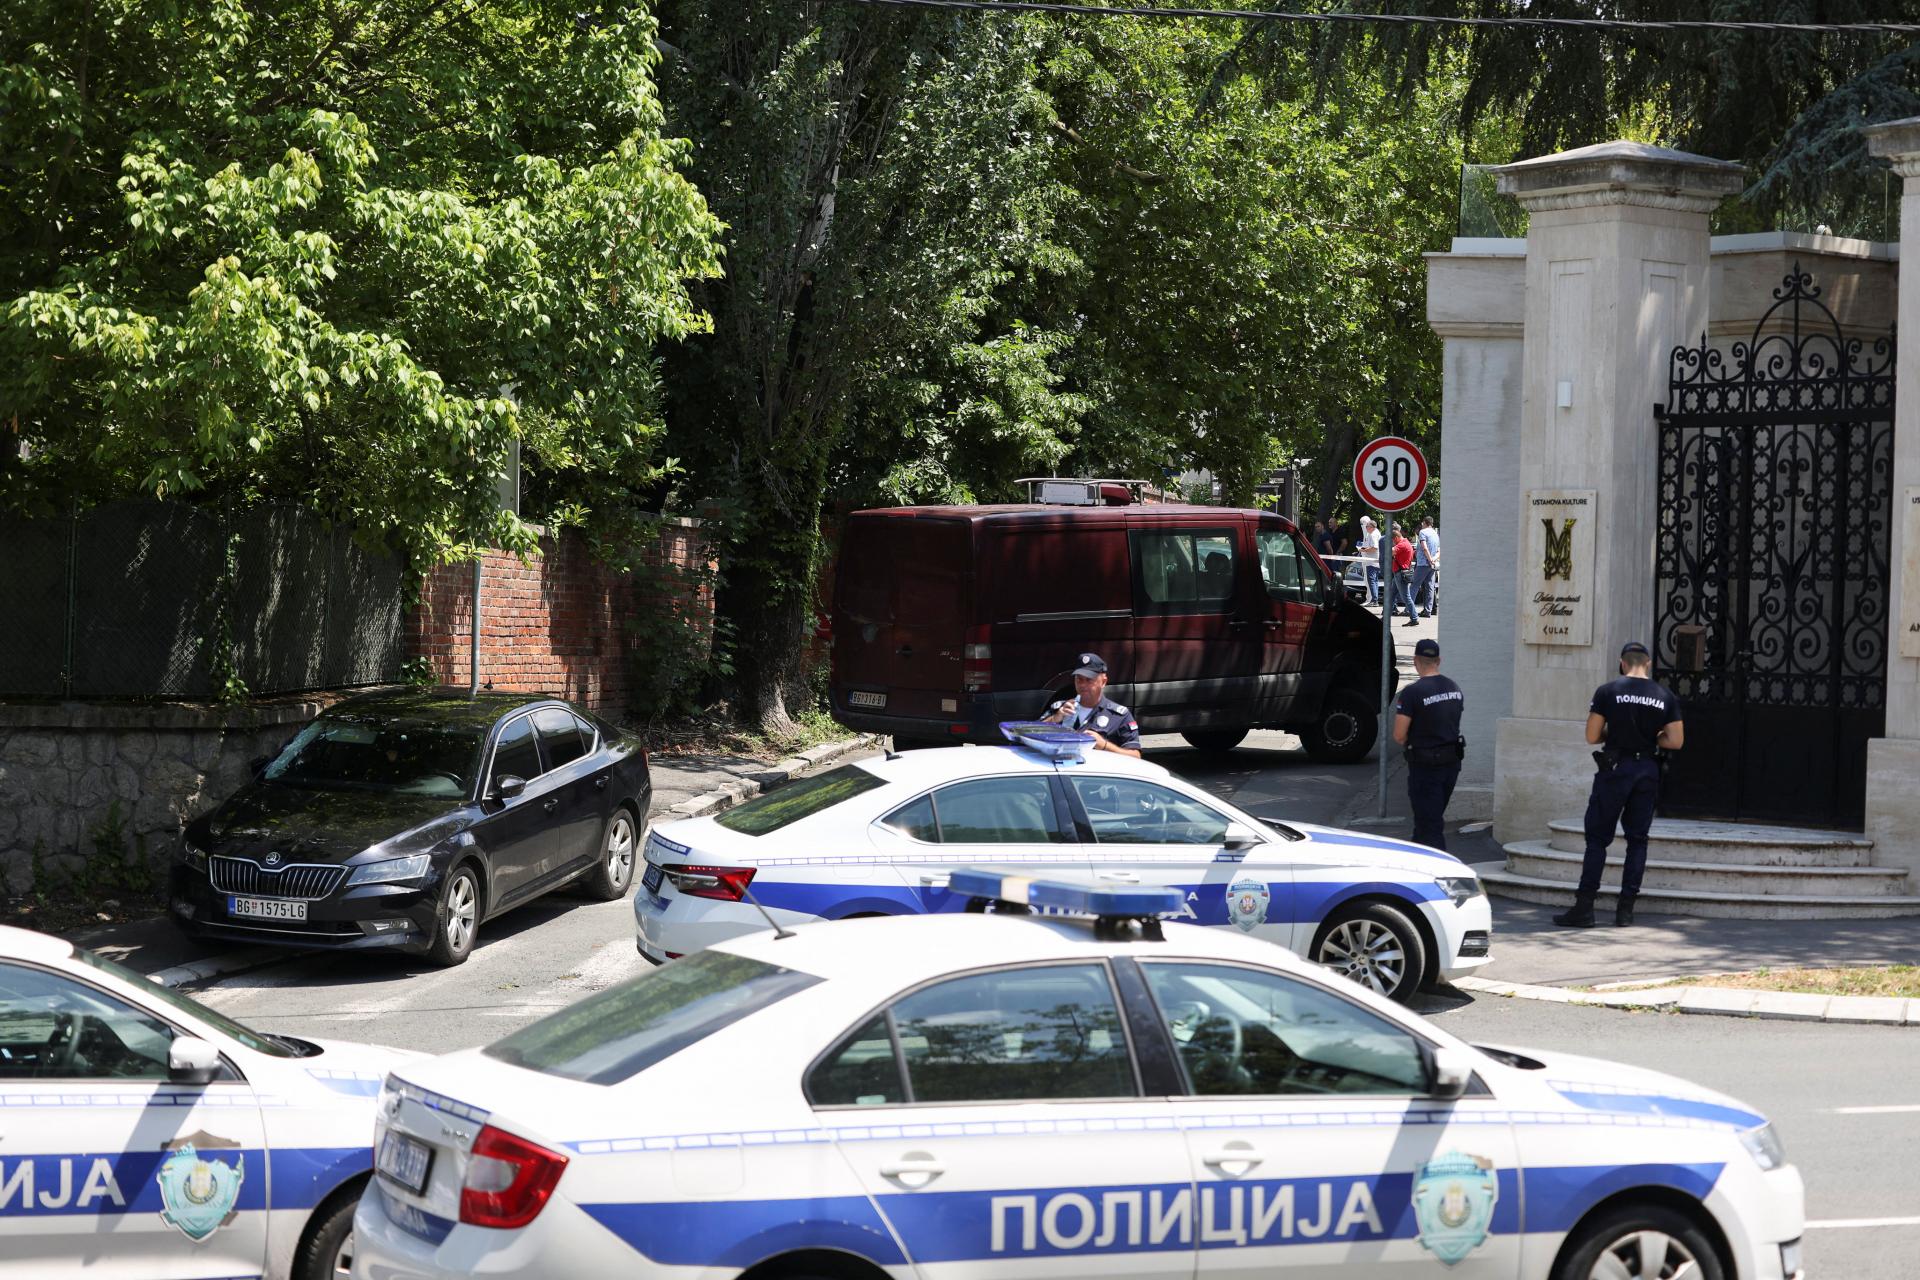 V súvislosti s útokom pred izraelskou ambasádou v Srbsku zadržala polícia dve osoby